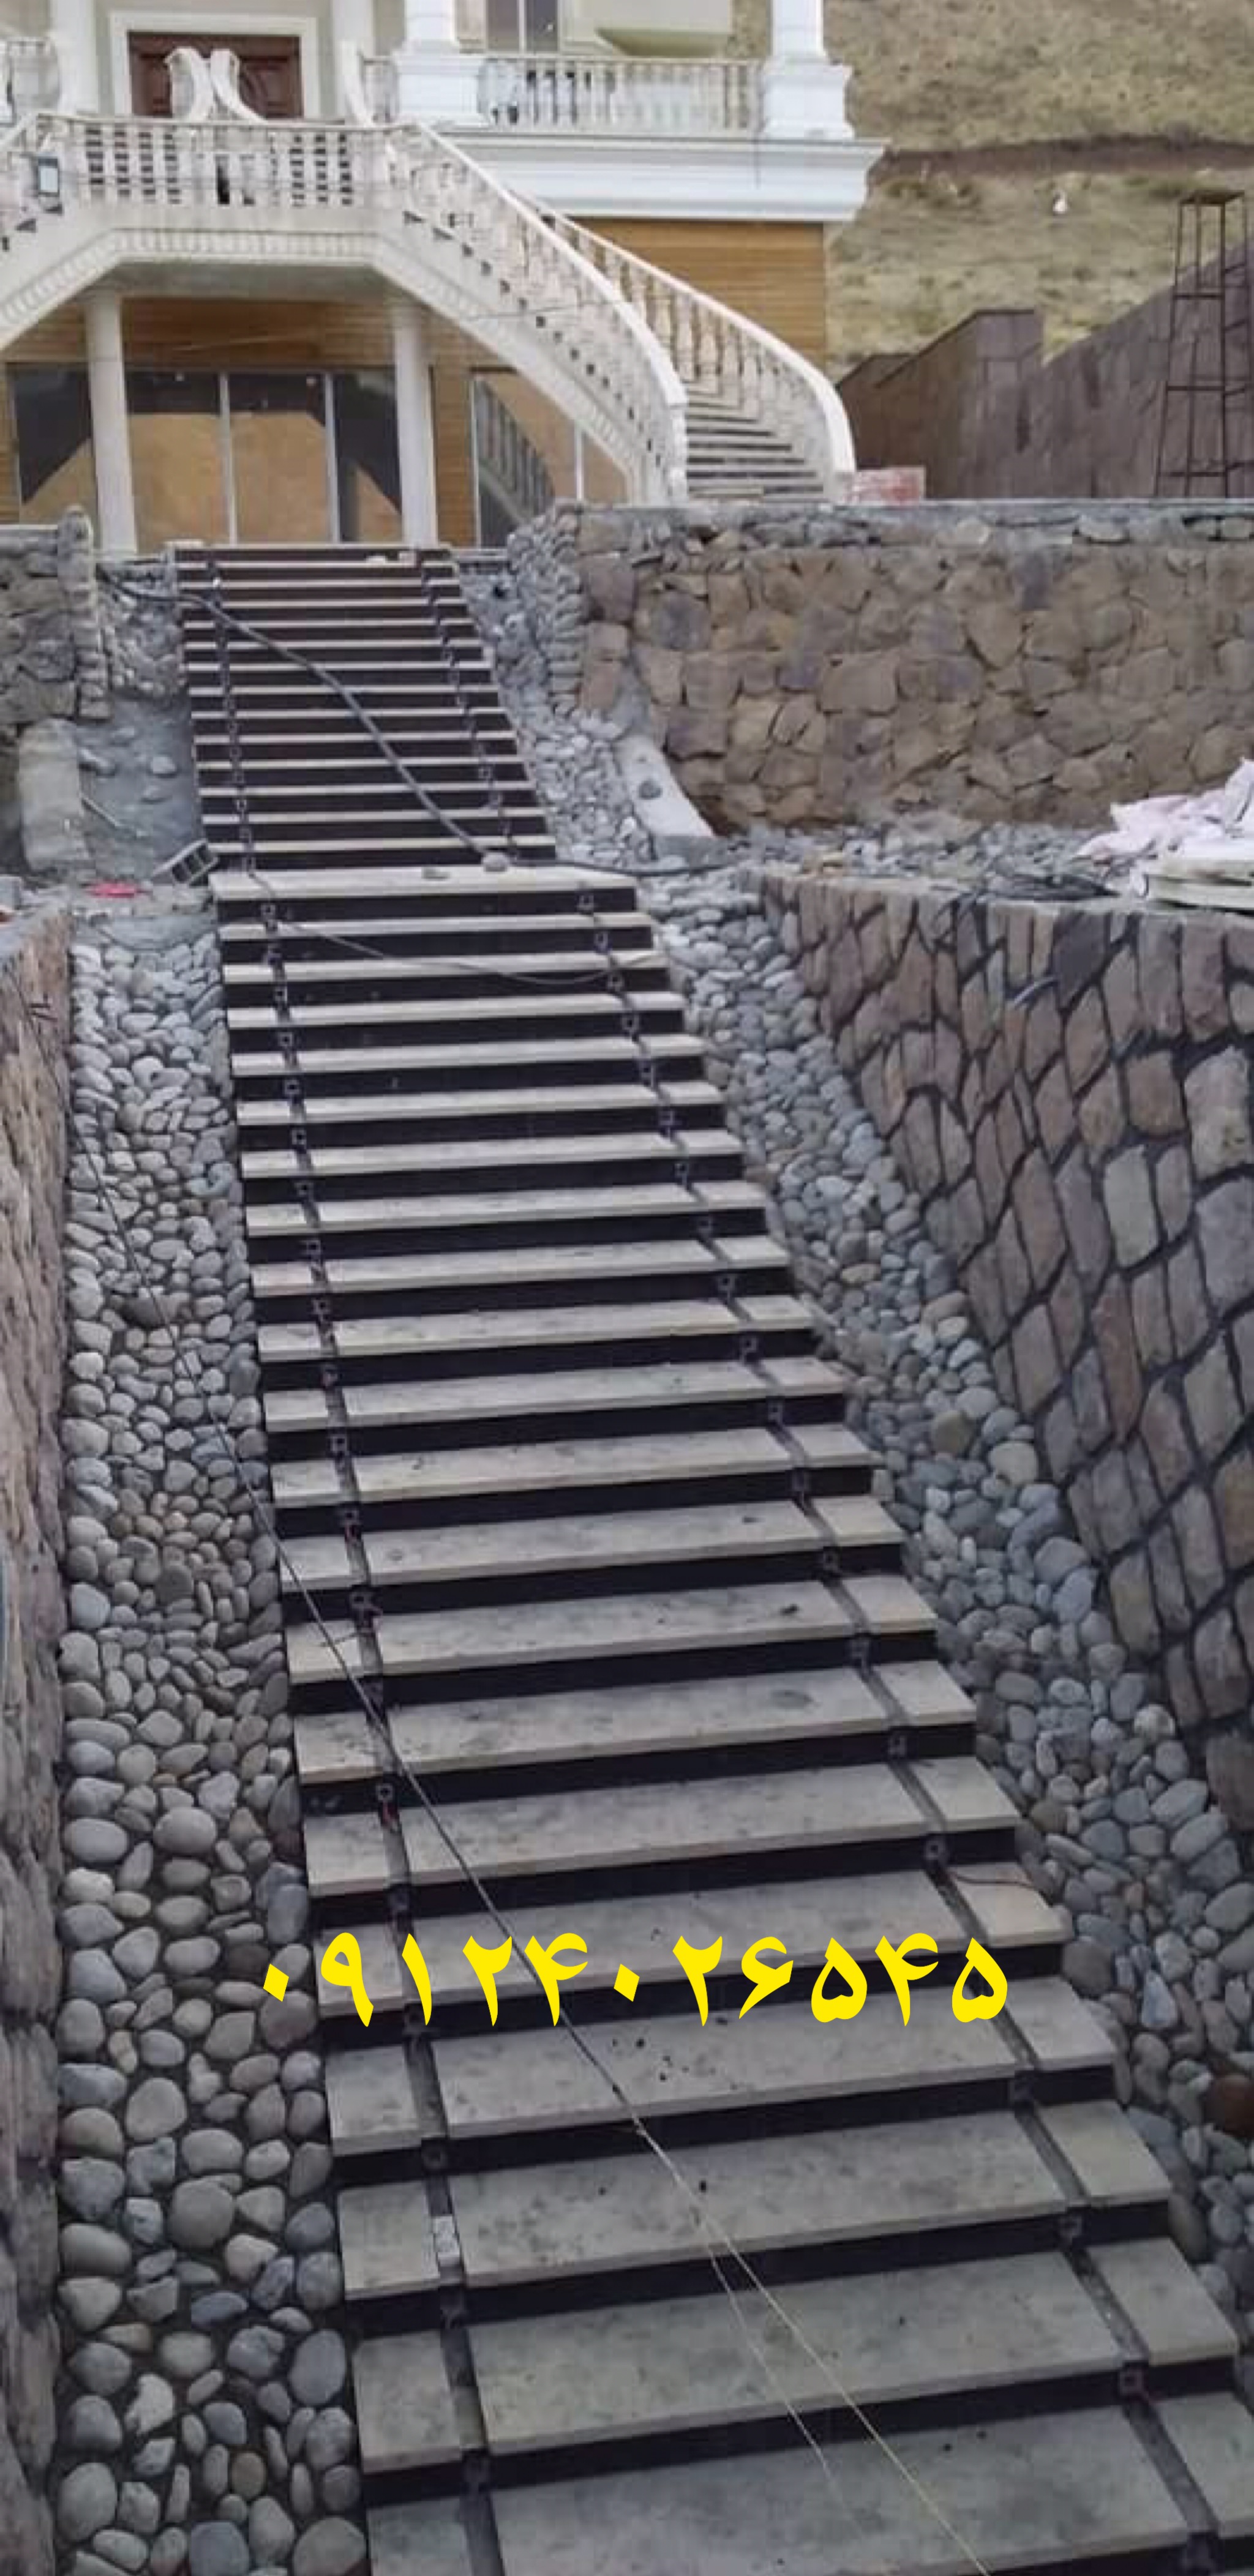 اجرای پله های سنگی و دیوارهای سنگی محوطه سازی با استفاده از سنگ لاشه طبیعی اجرا شده است  